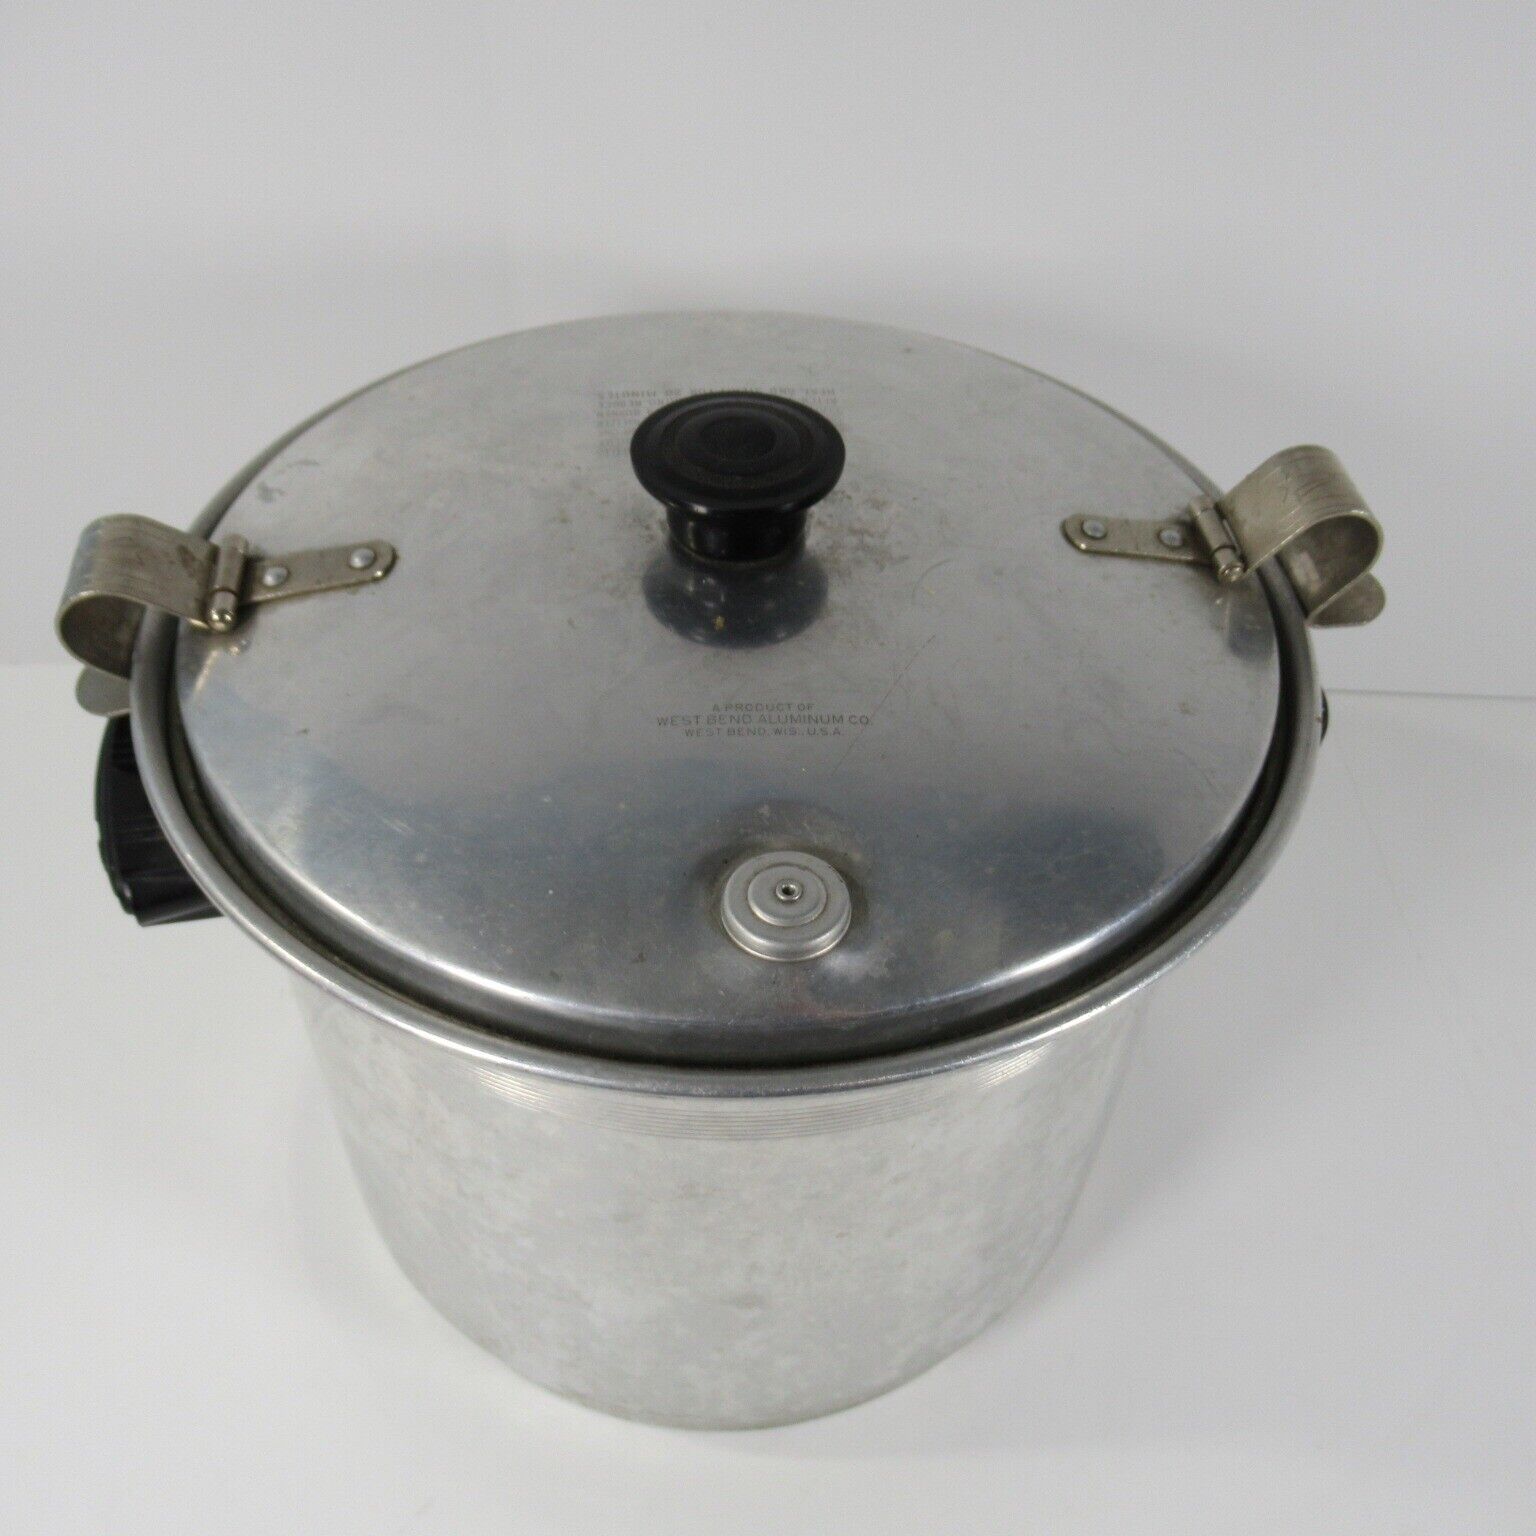 Vintage West Bend Aluminum Pot With Lid